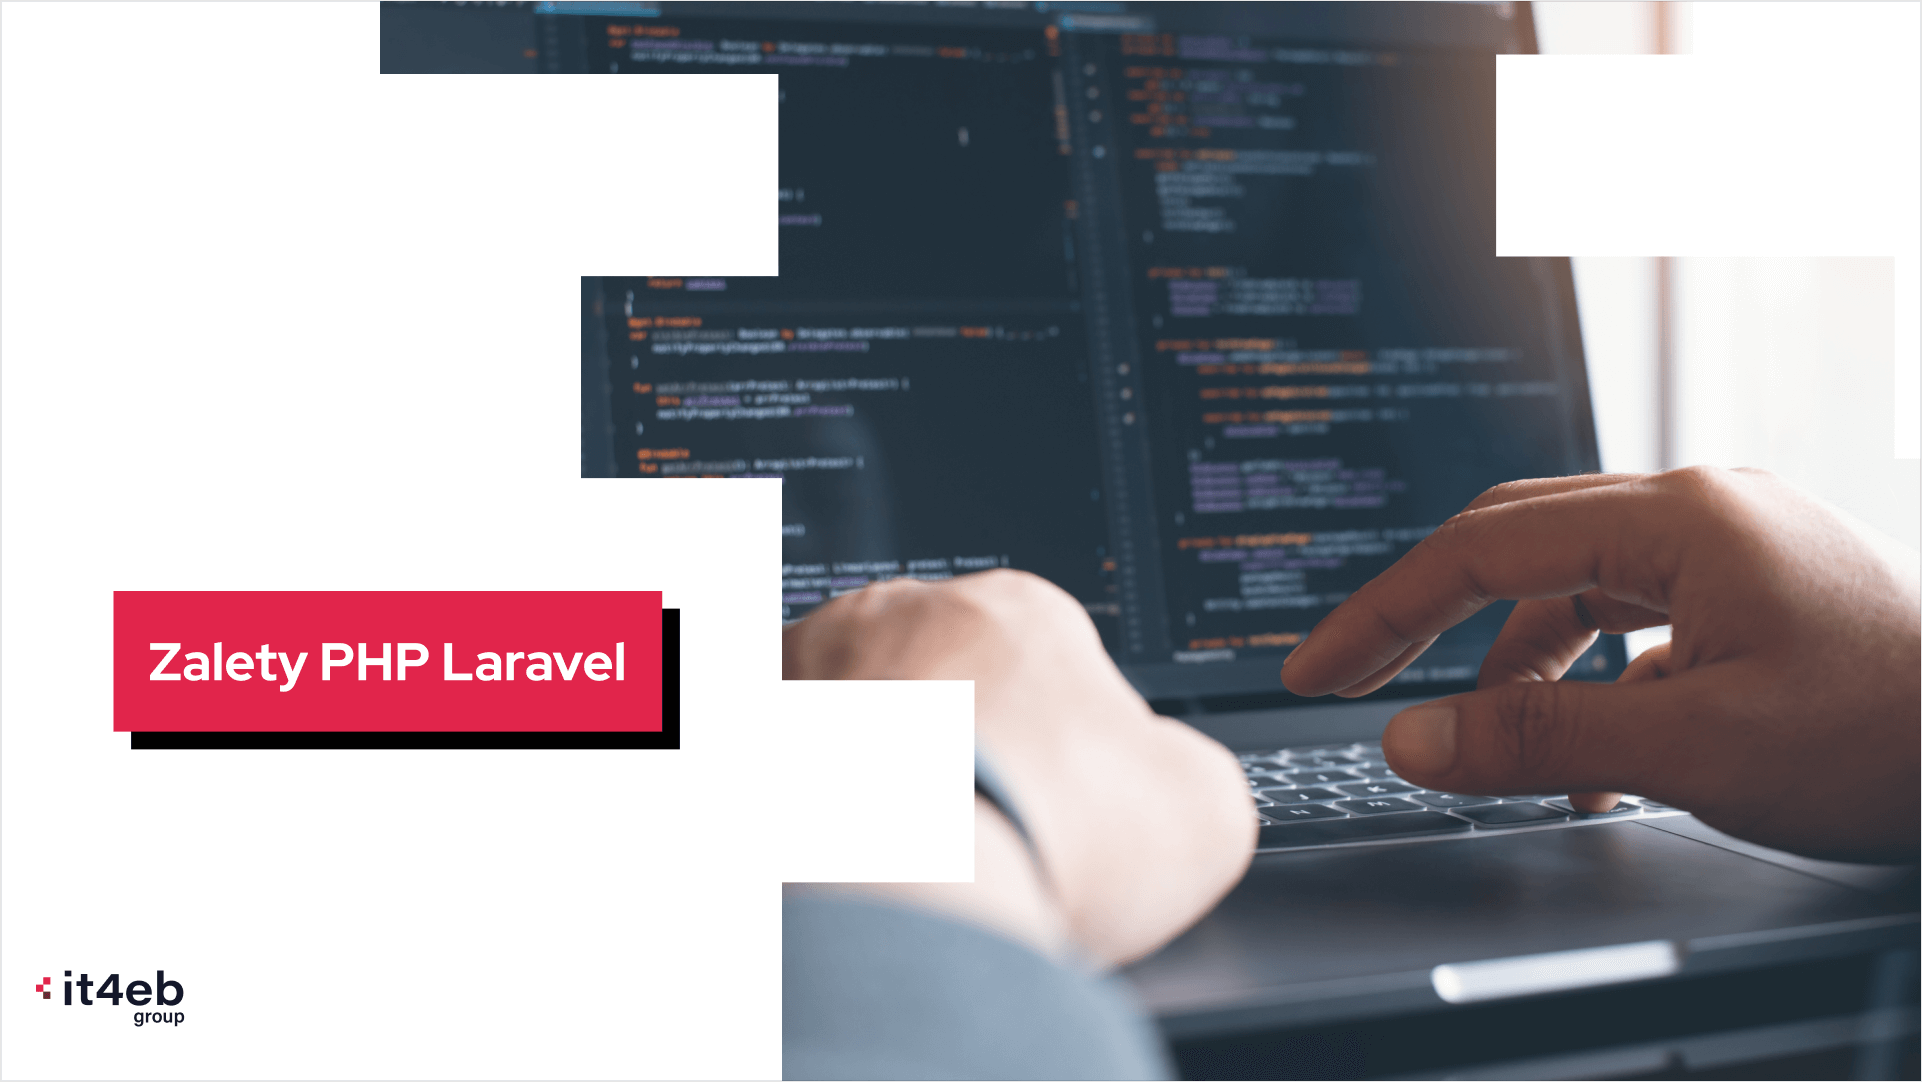 Co wyróżnia PHP Laravel na tle innych frameworków?